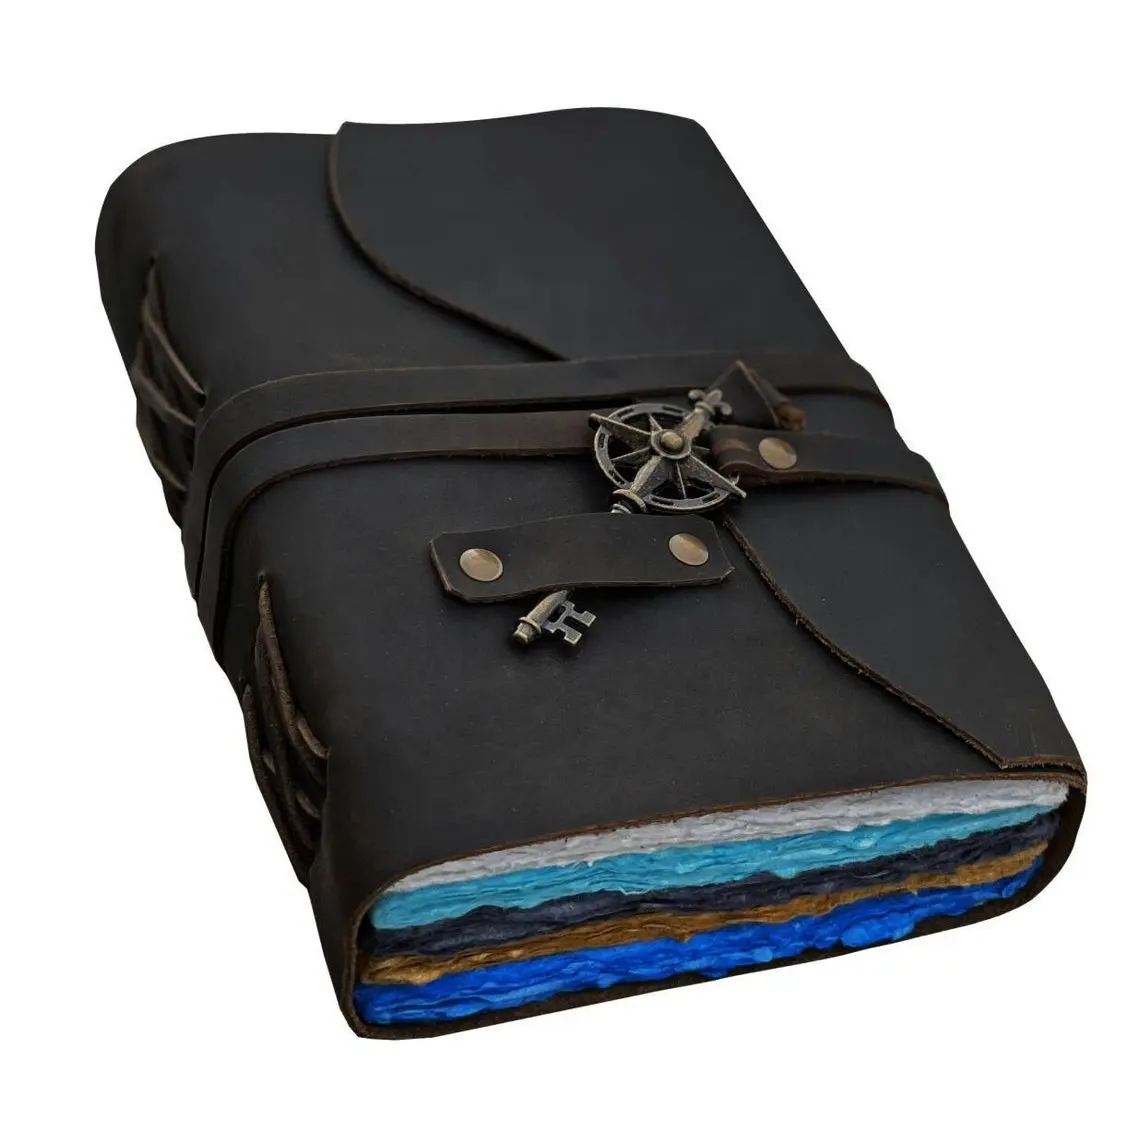 Дневник из высококачественной кожи под Античный ключ с деревянной отделкой ручной работы, разноцветная бумажная кожаная тетрадь